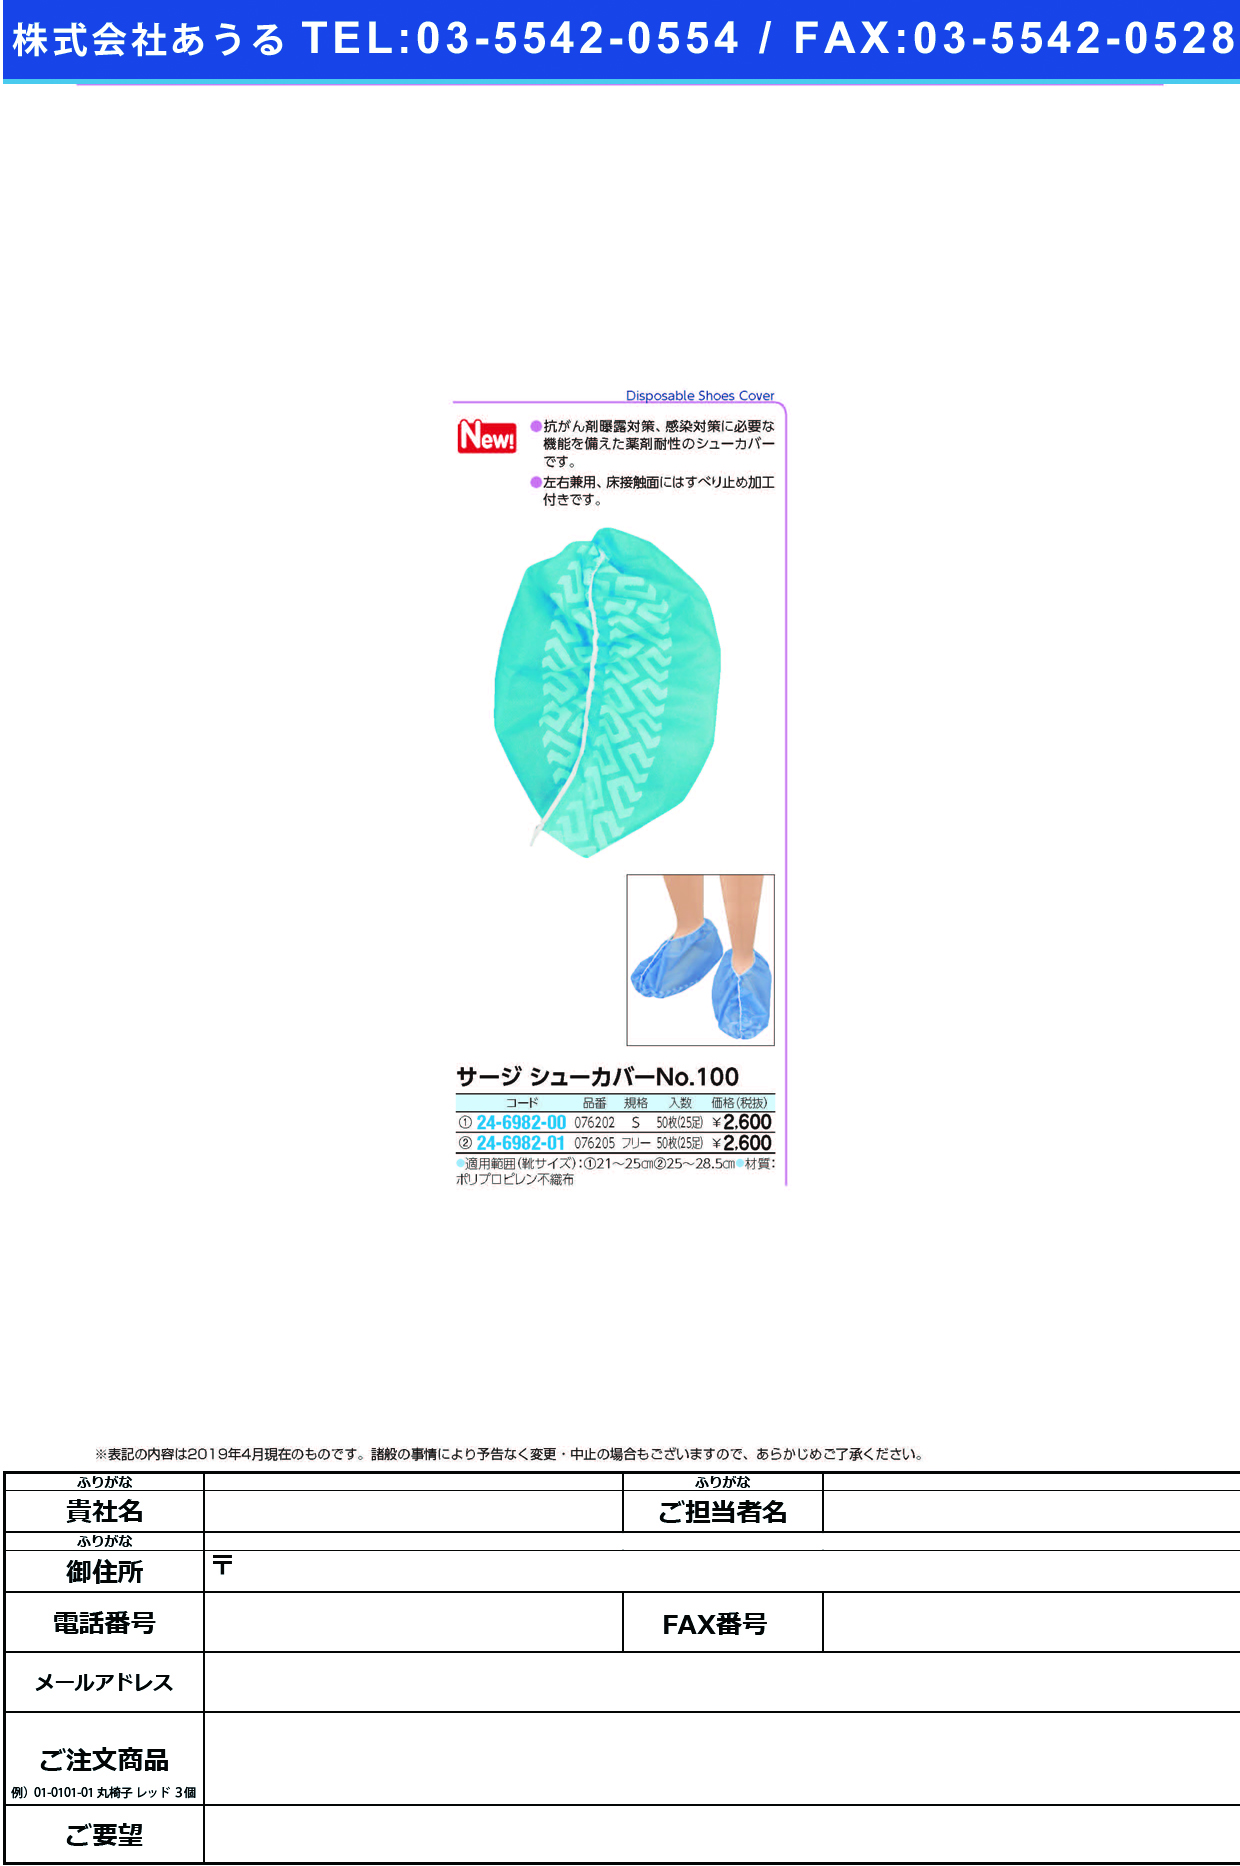 (24-6982-01)サージシューカバー　Ｎｏ１００076205(ﾌﾘｰ)50ﾏｲｲﾘ ｻｰｼﾞｼｭｰｶﾊﾞｰ NO100(竹虎)【1箱単位】【2019年カタログ商品】